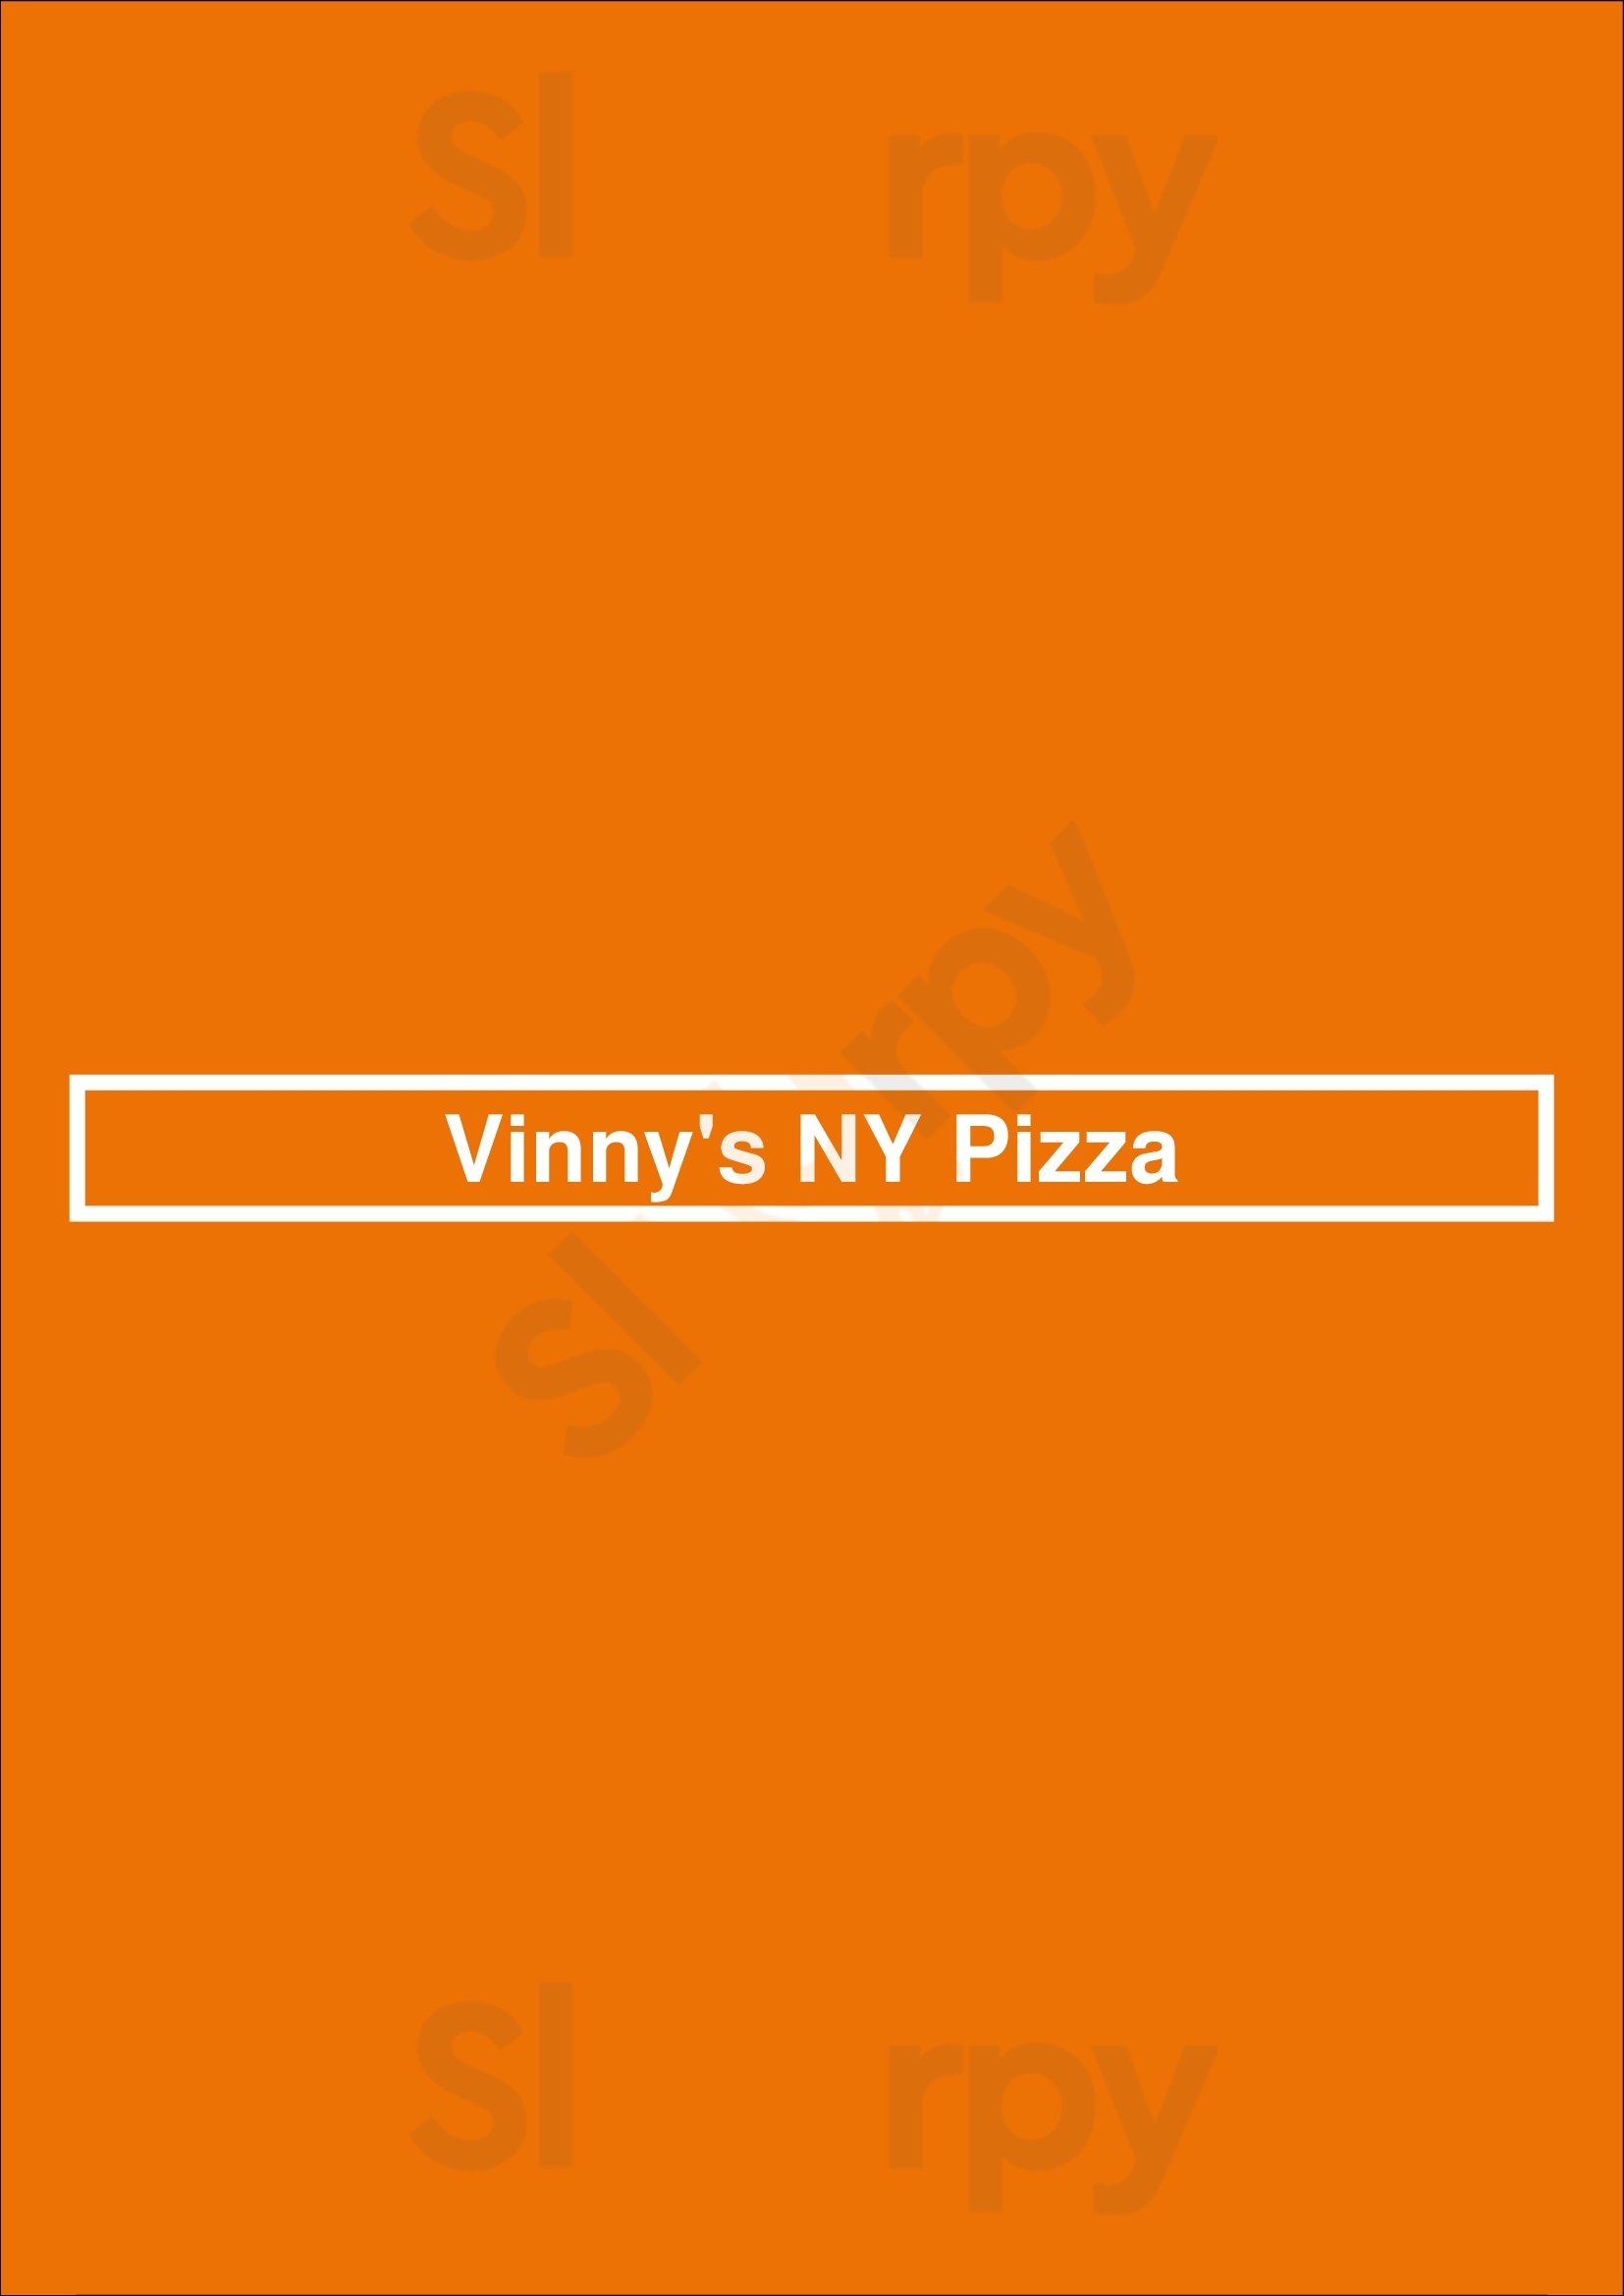 Vinny's Ny Pizza Atlanta Menu - 1